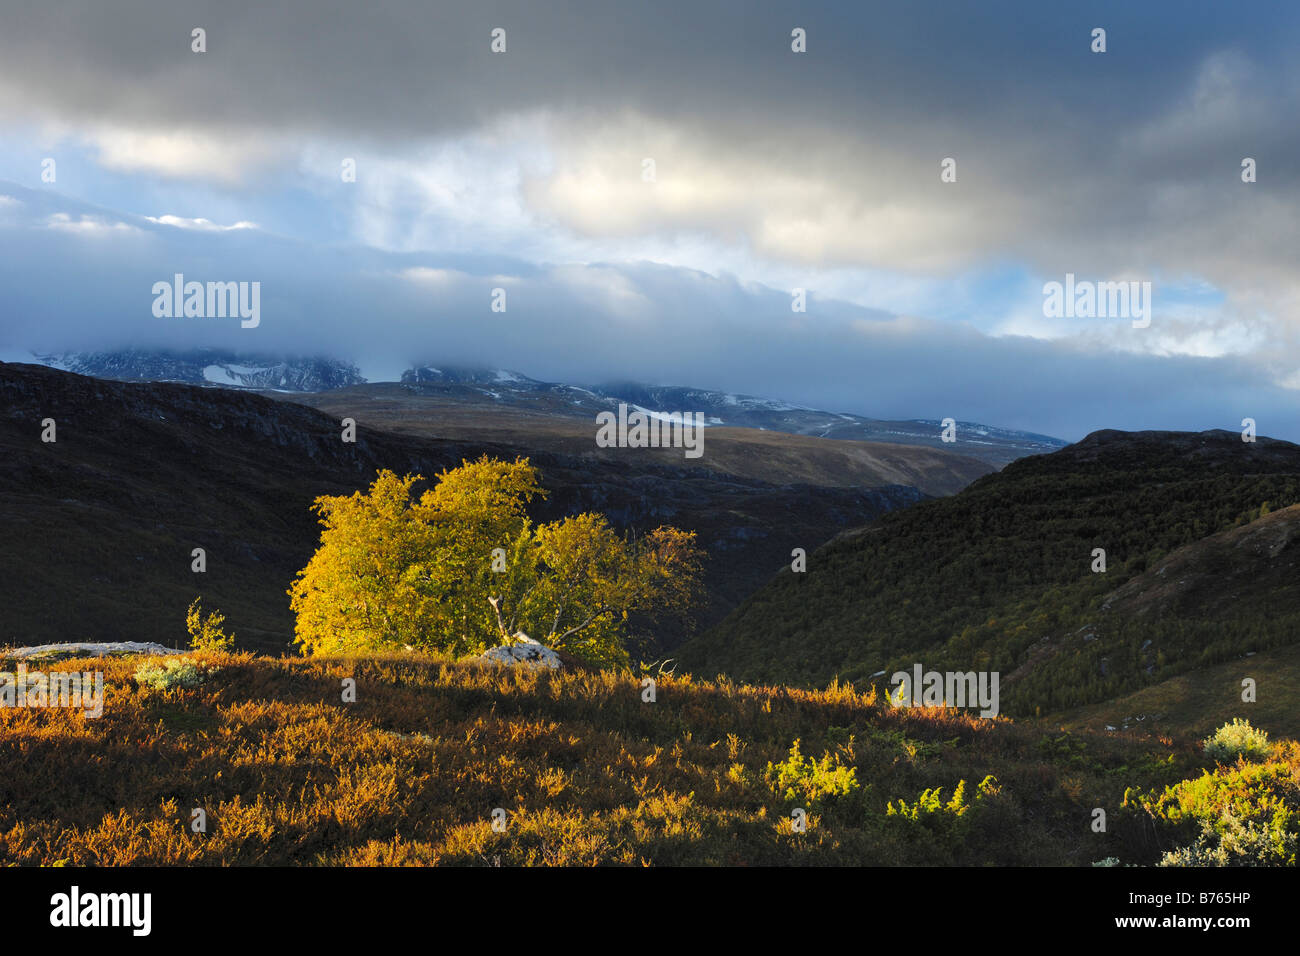 Pioggia nuvole furuhaugli scenari montuosi Oppland Norvegia nord europa autunno paesaggio paesaggio Foto Stock